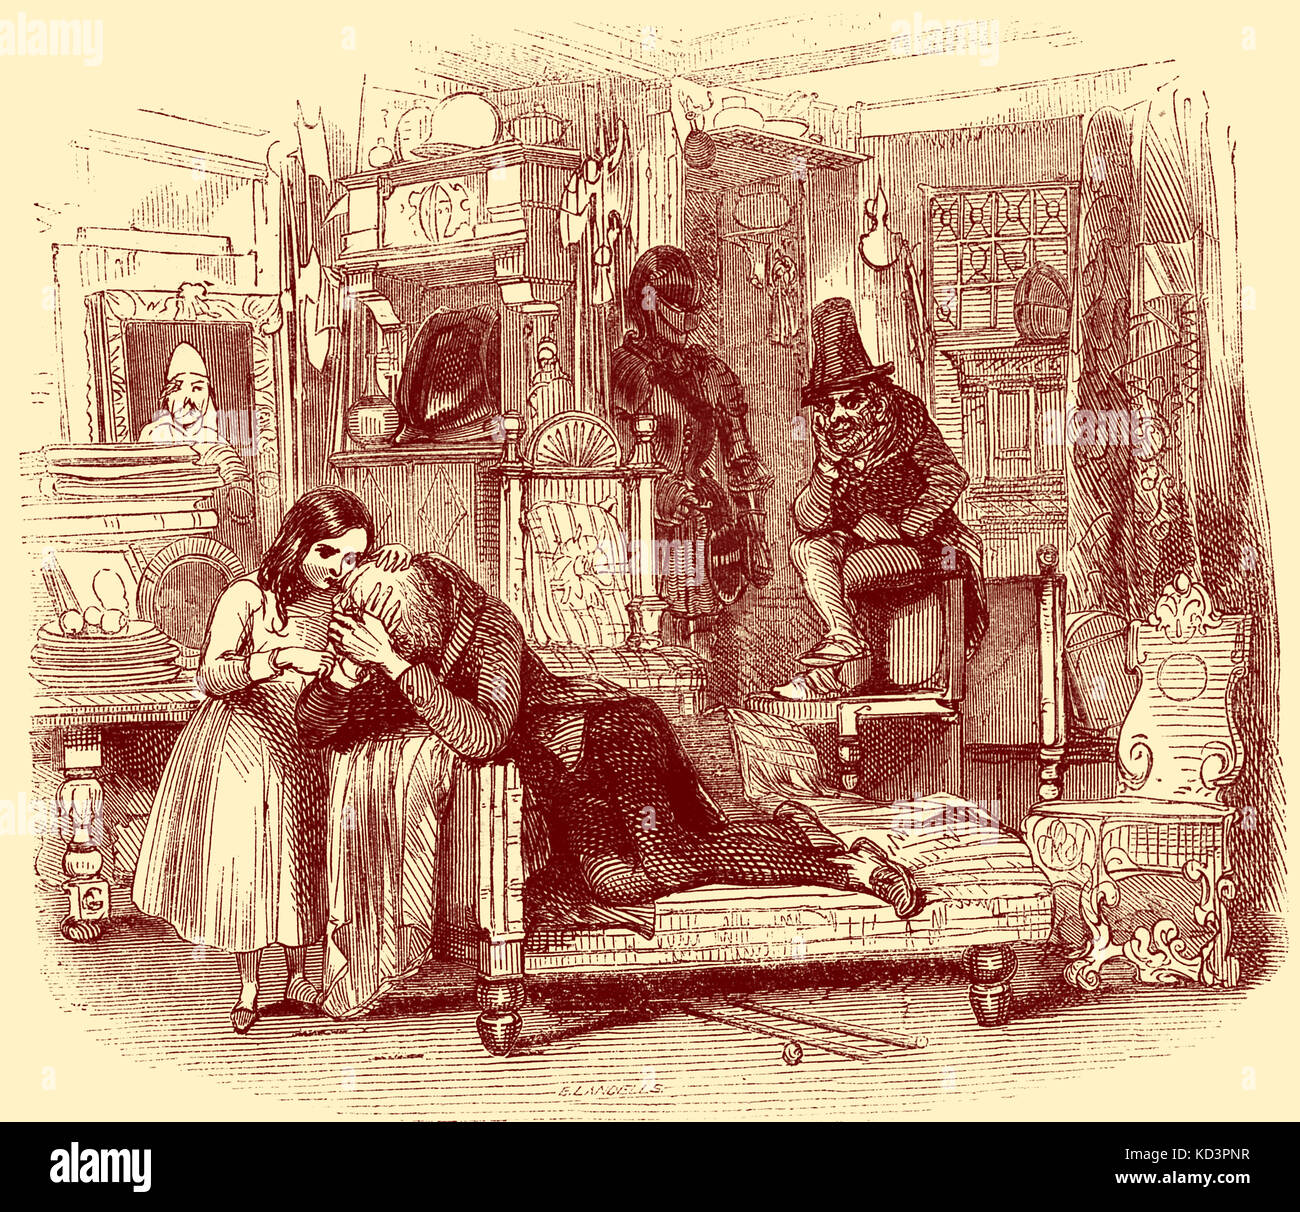 Charles Dickens 'The Old Curiosity Shop'. Pubblicato per la prima volta nel 1841. Descrizione della scena: Little nell come Comforter. Capitolo nove. Illustrazione di George Cattermole (1800-1868) CD: Romanziere inglese 7 febbraio 1812 – 9 giugno 1870 Foto Stock